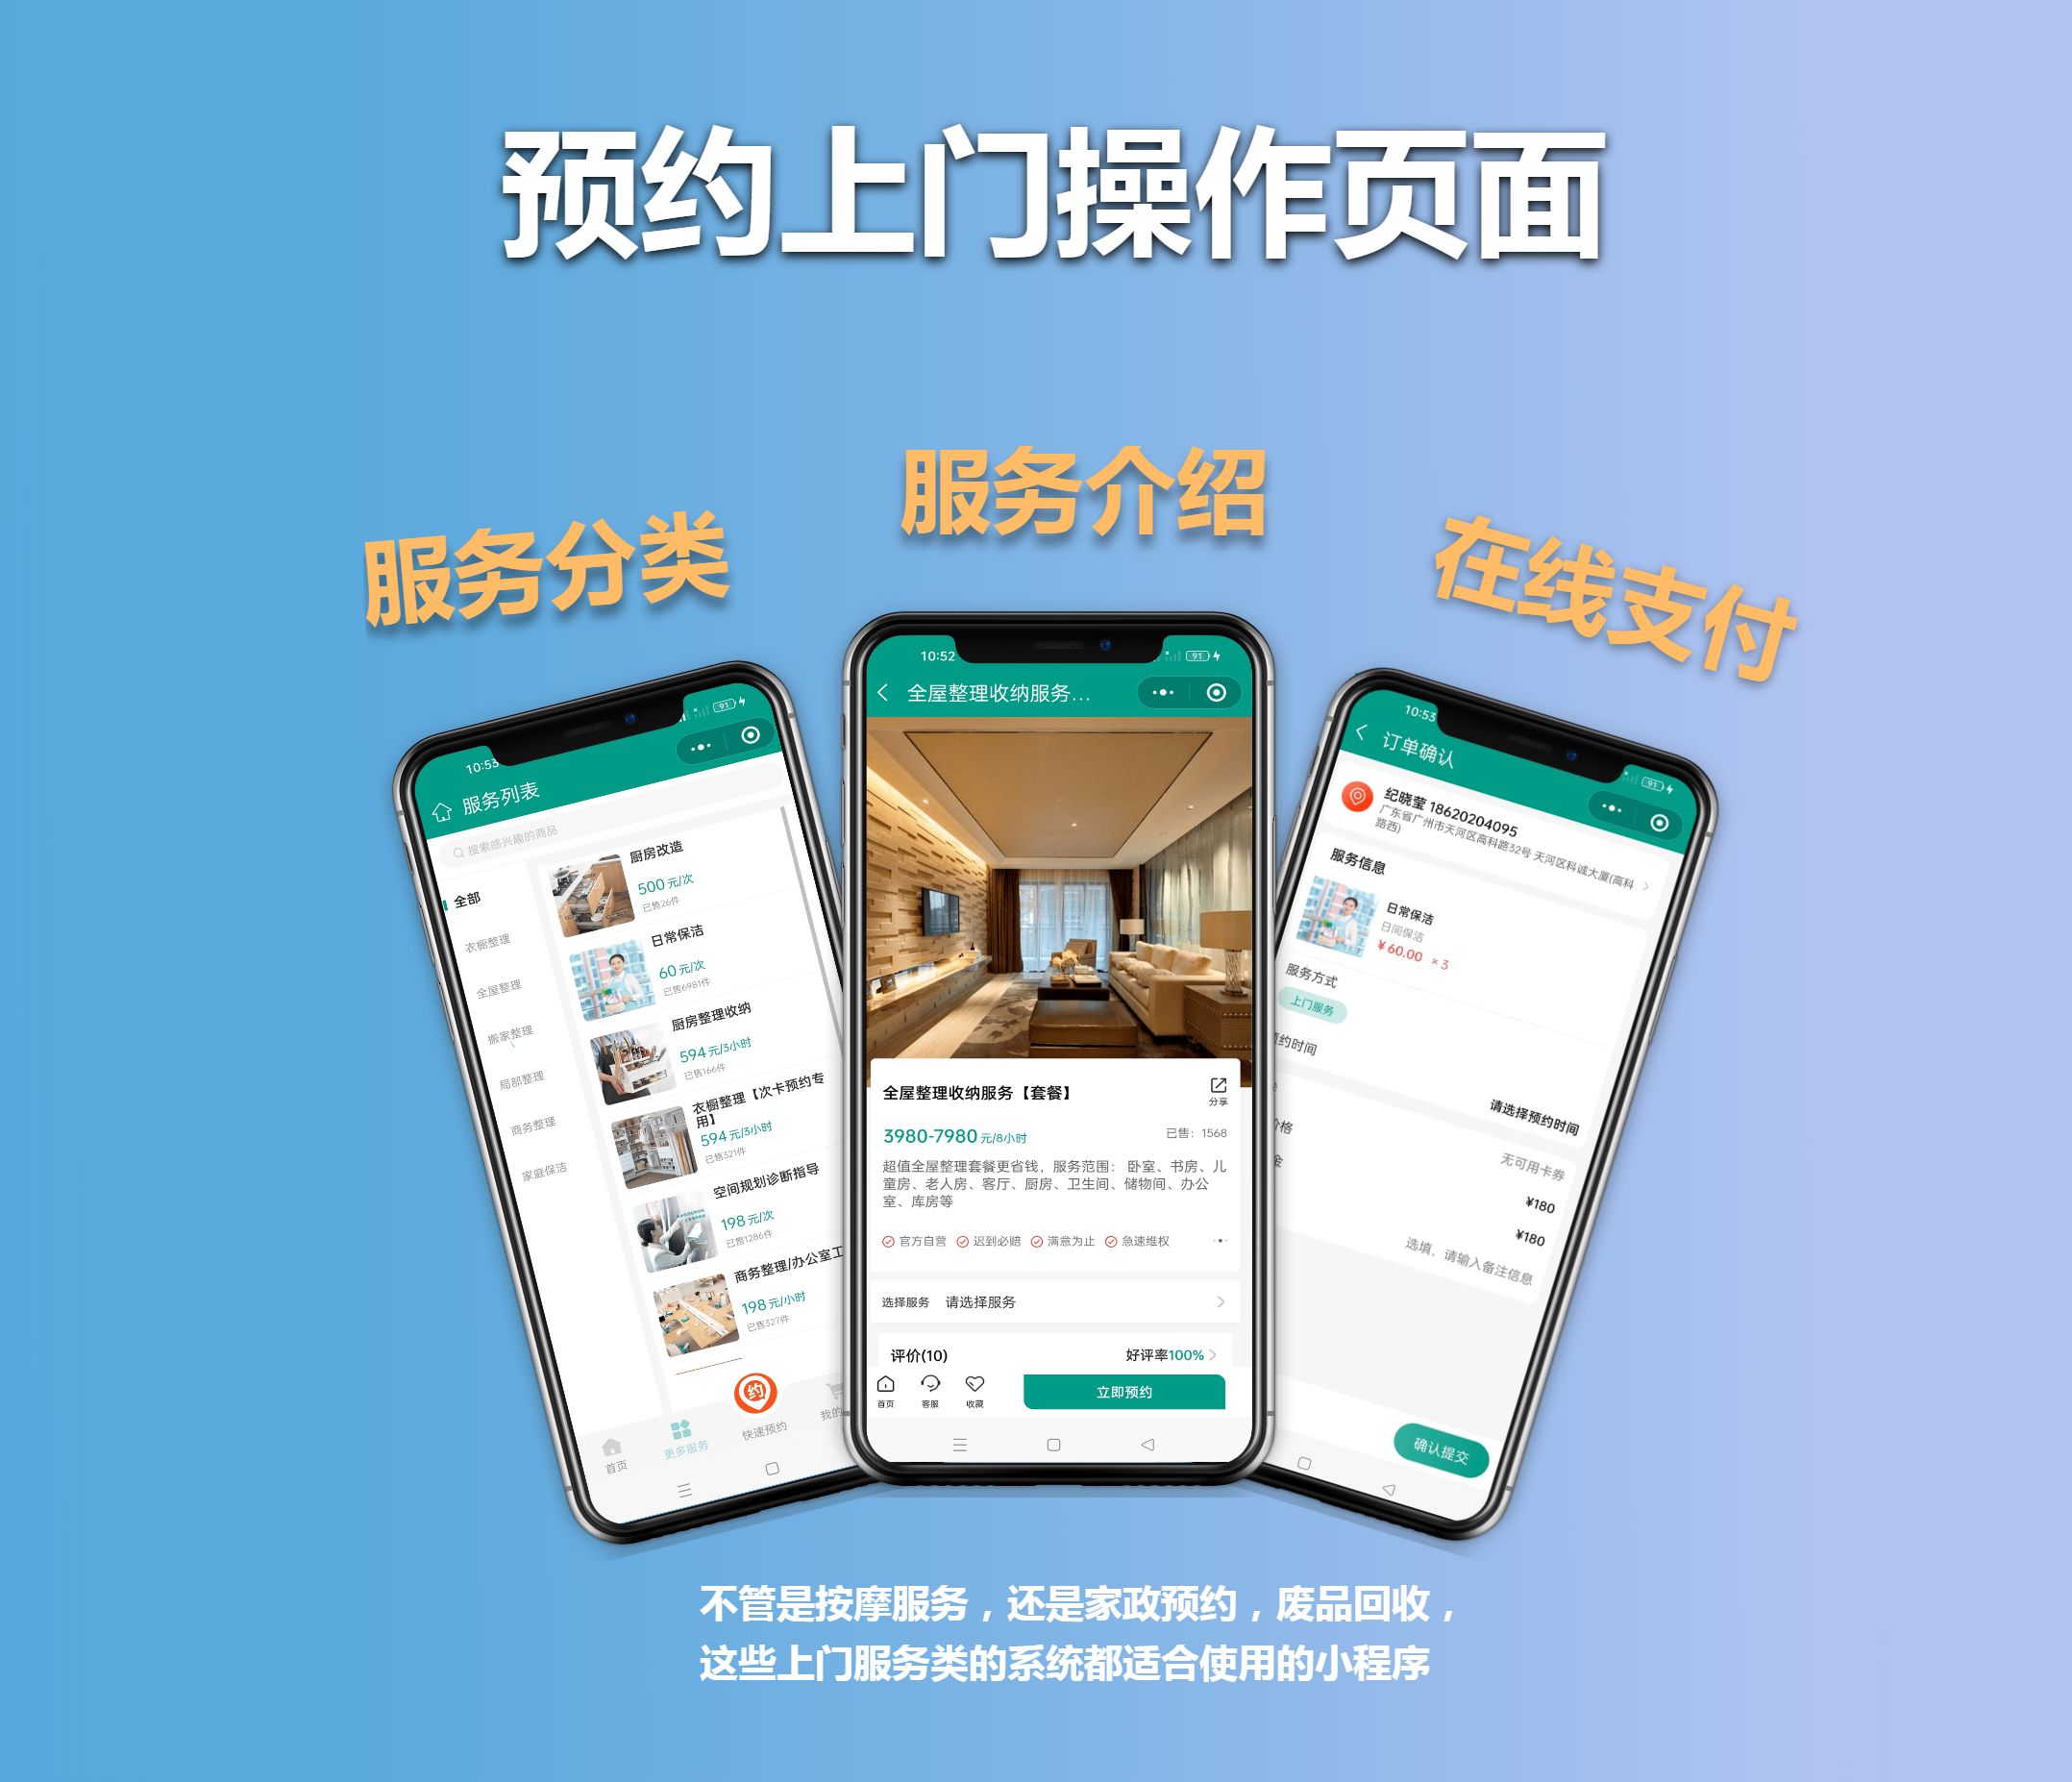 足疗按摩微信公众号开发营销方案-广州开发公司